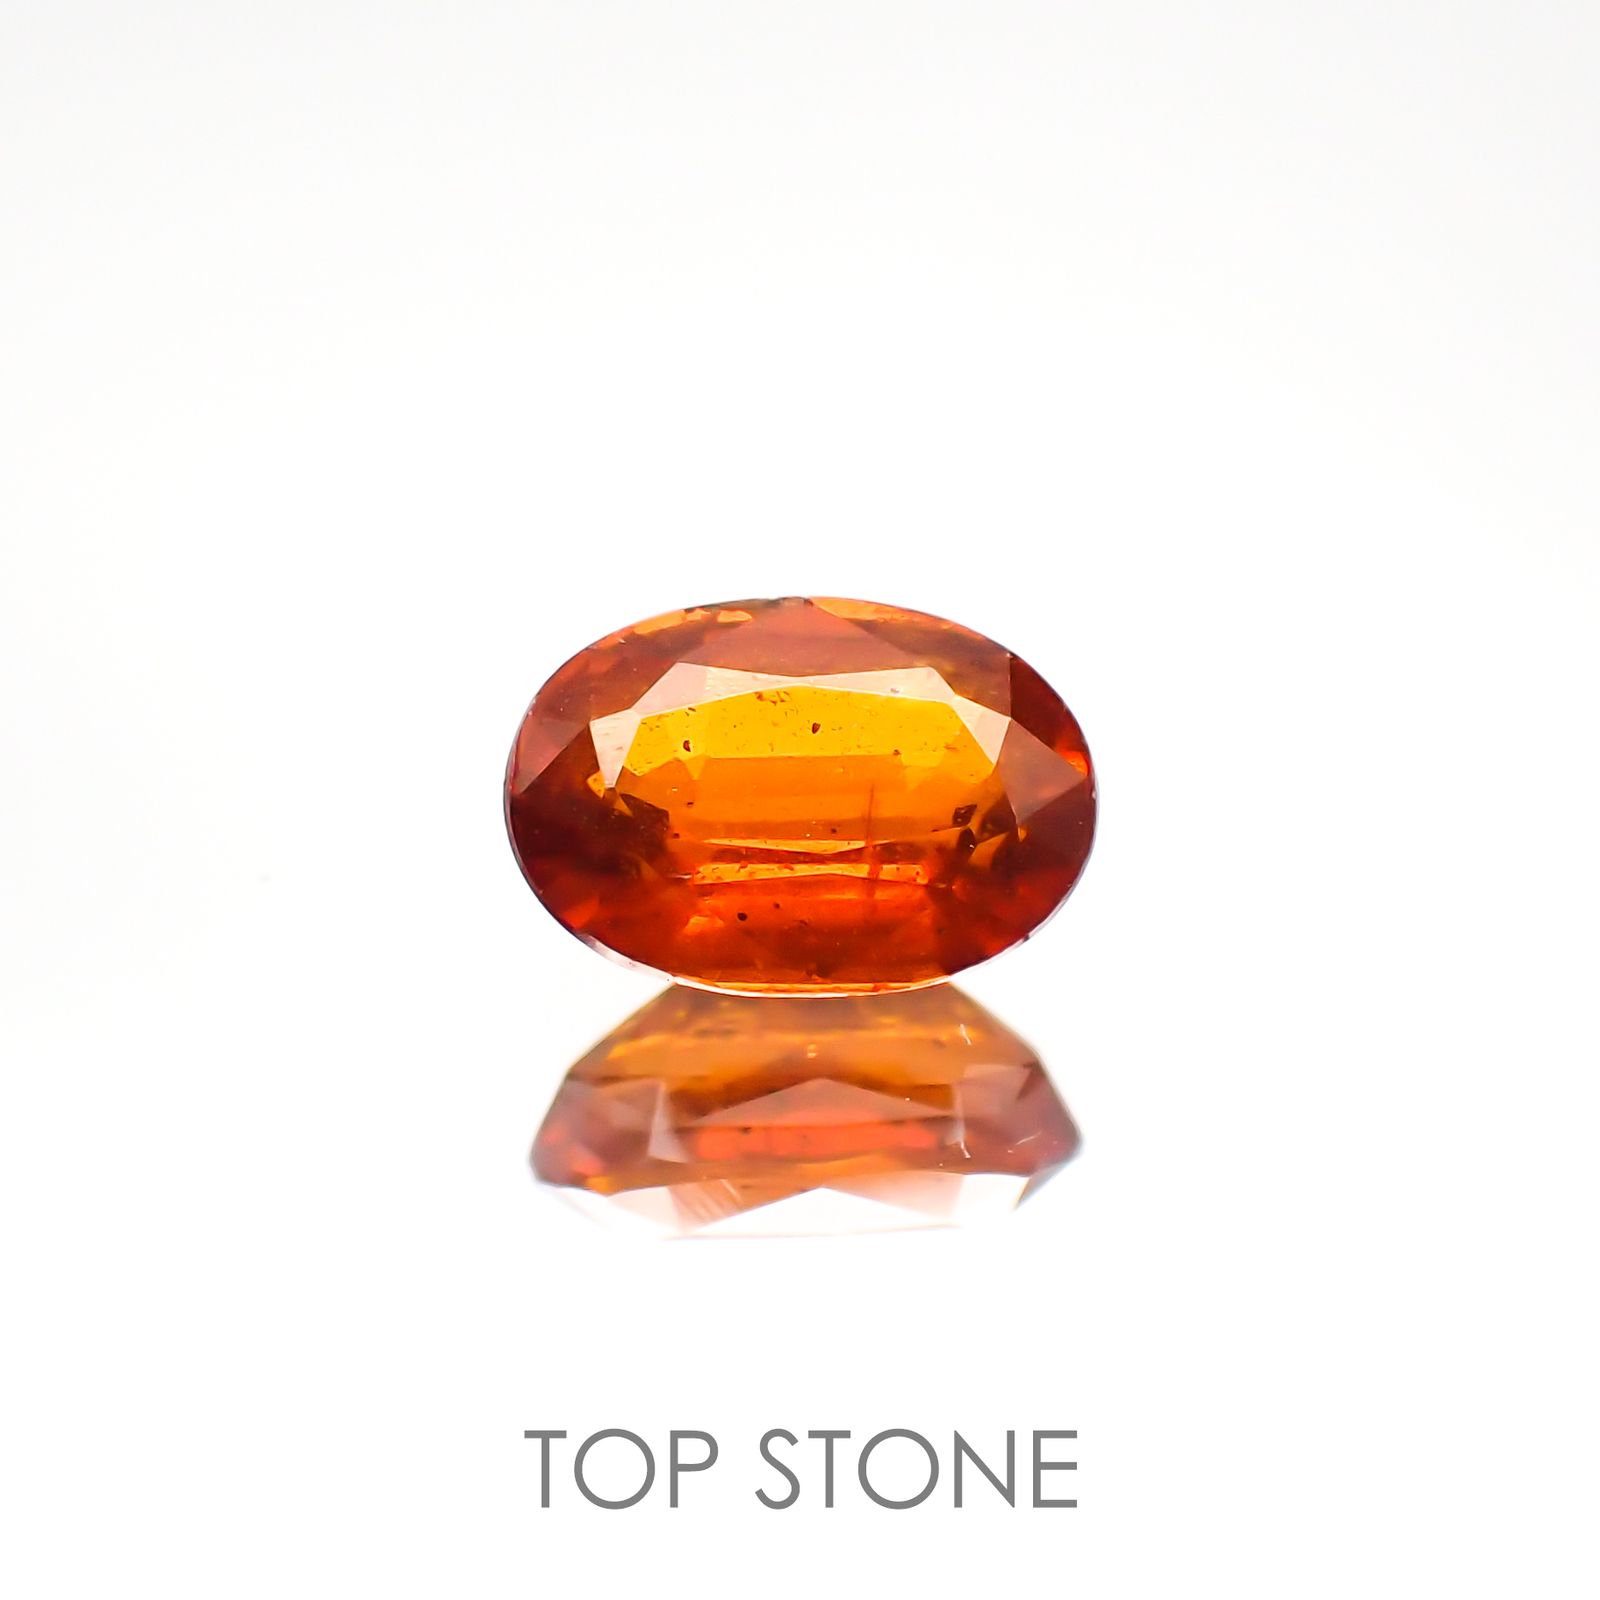 オレンジカイヤナイト(宝石名カイヤナイト) ネパール産 0.95ct 識別済[210812448]7×4.8mm前後 | TOP  STONE(トップストーン)